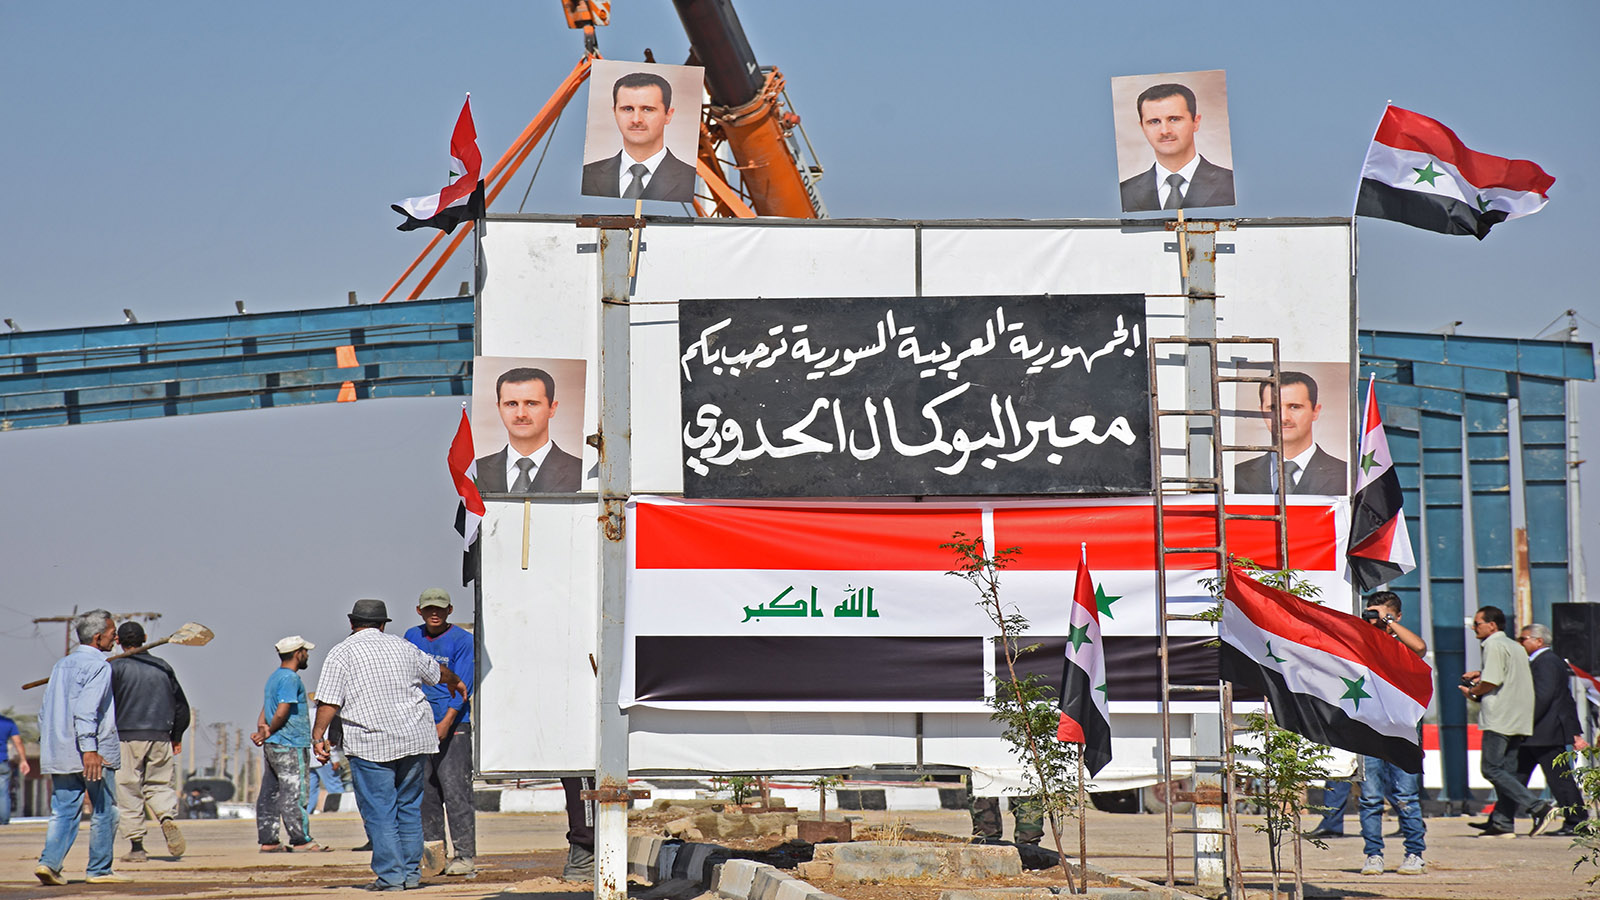 البوكمال:إعفاء الشاحنات العراقية من الرسوم..لتمرير الاسلحة؟